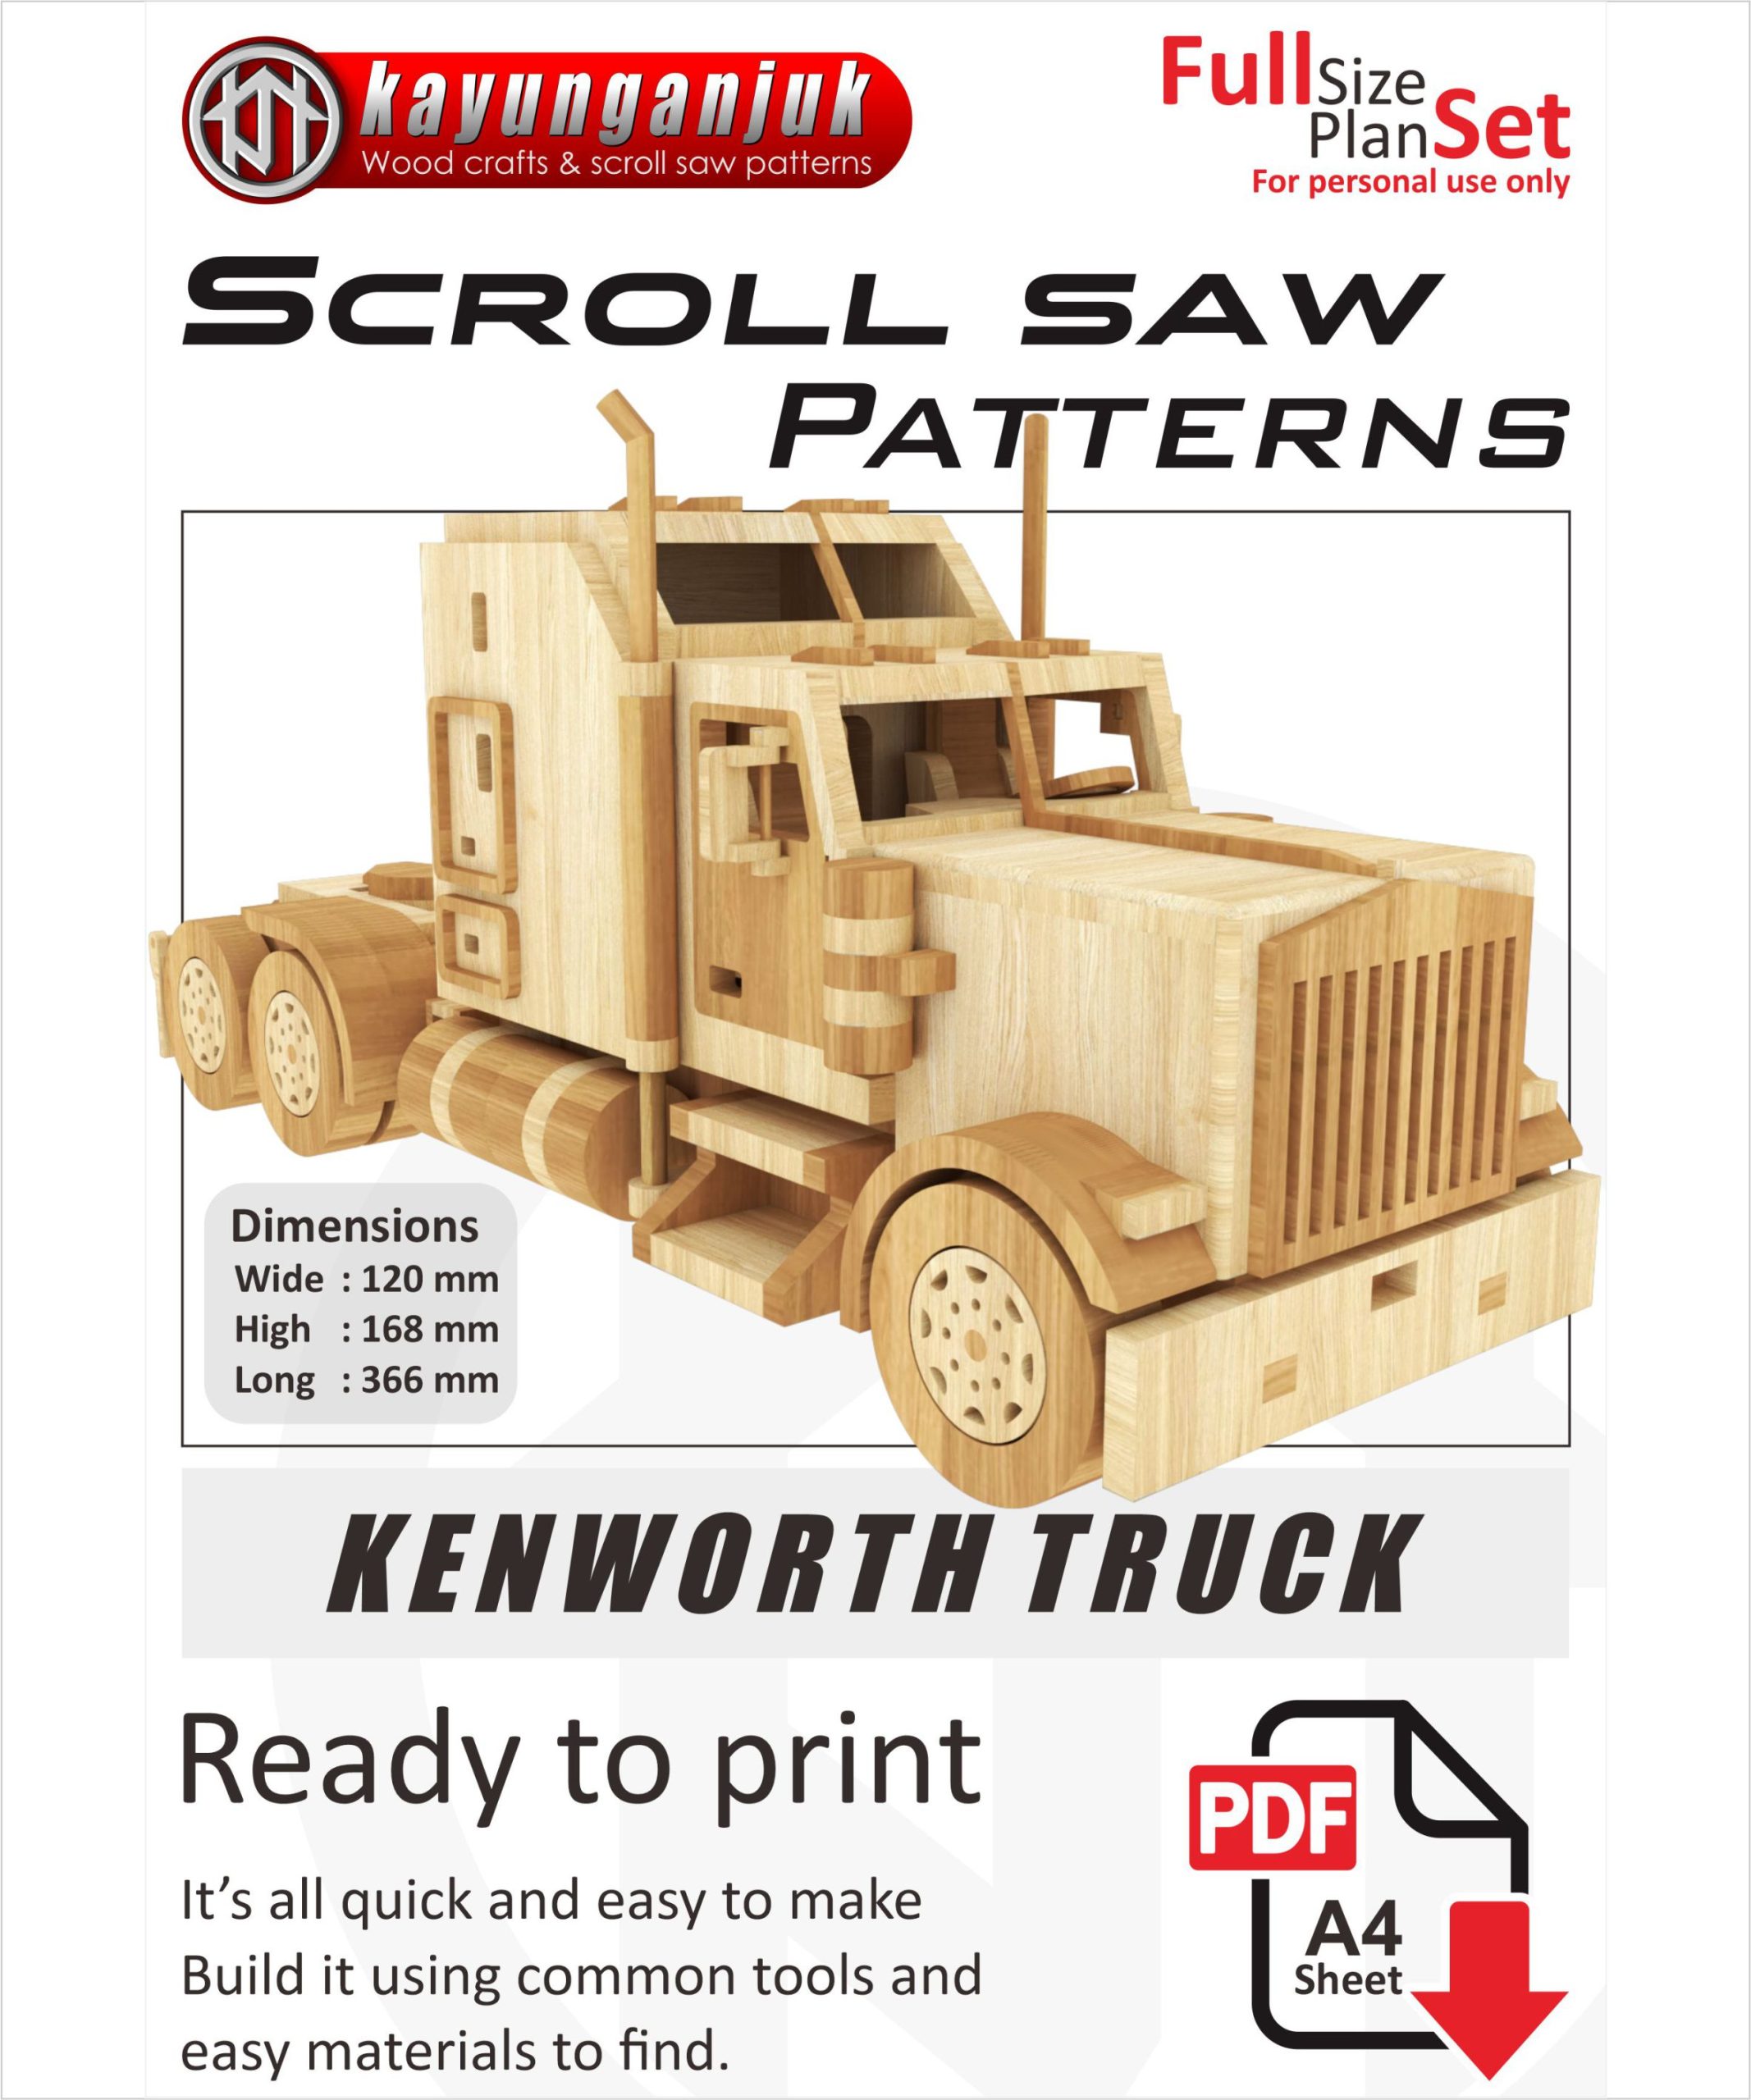 Kenworth Truck Wooden Toy Plans Pdf